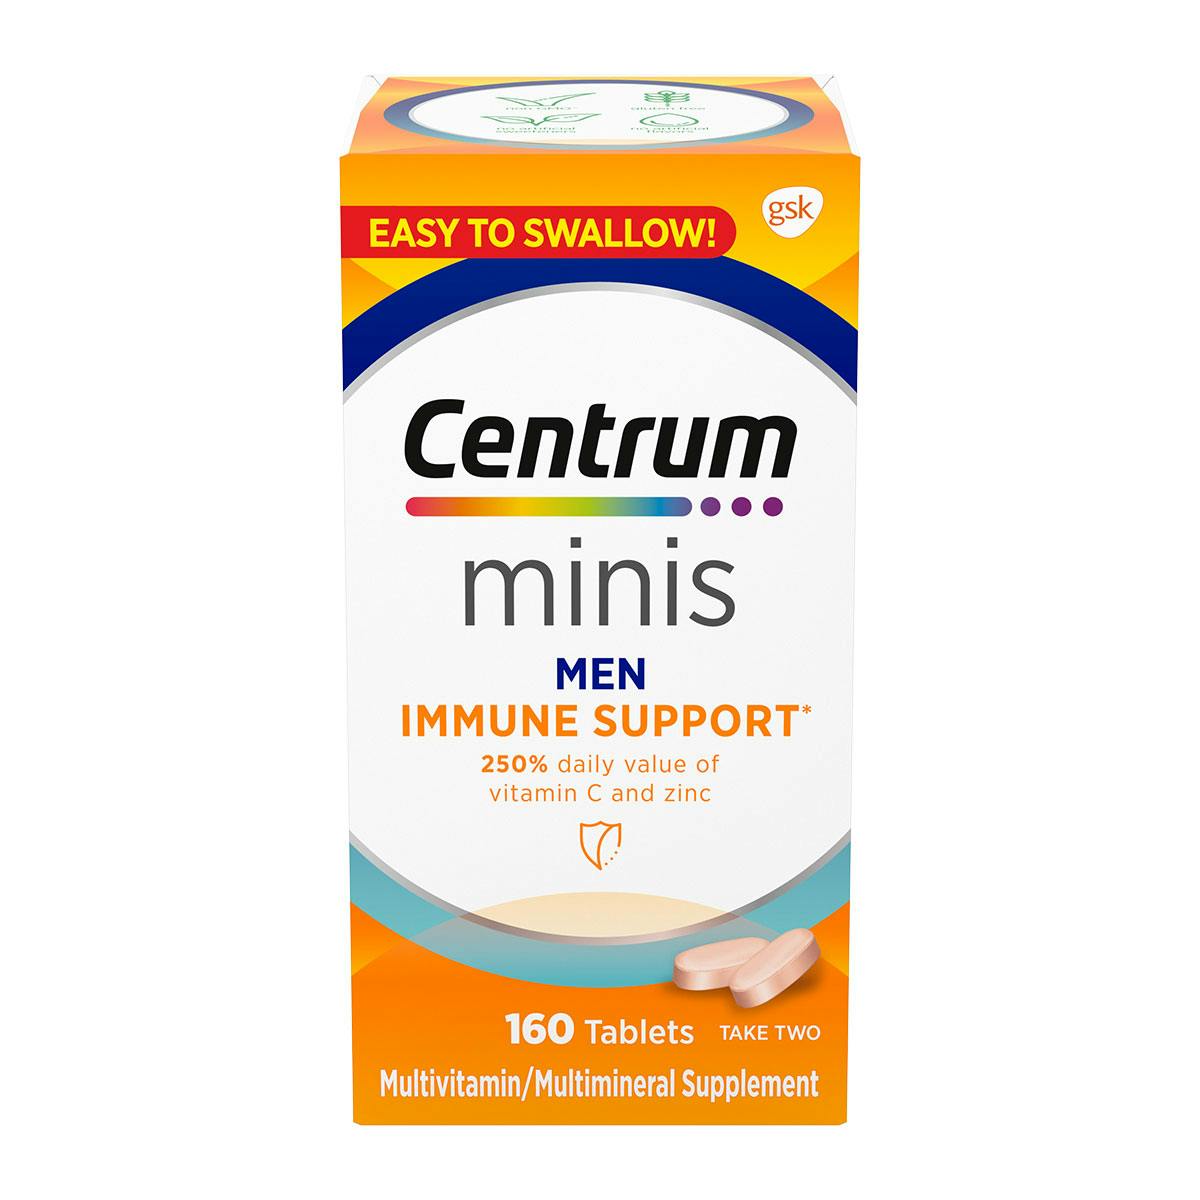 Box of Centrum Minis Men Immune Support